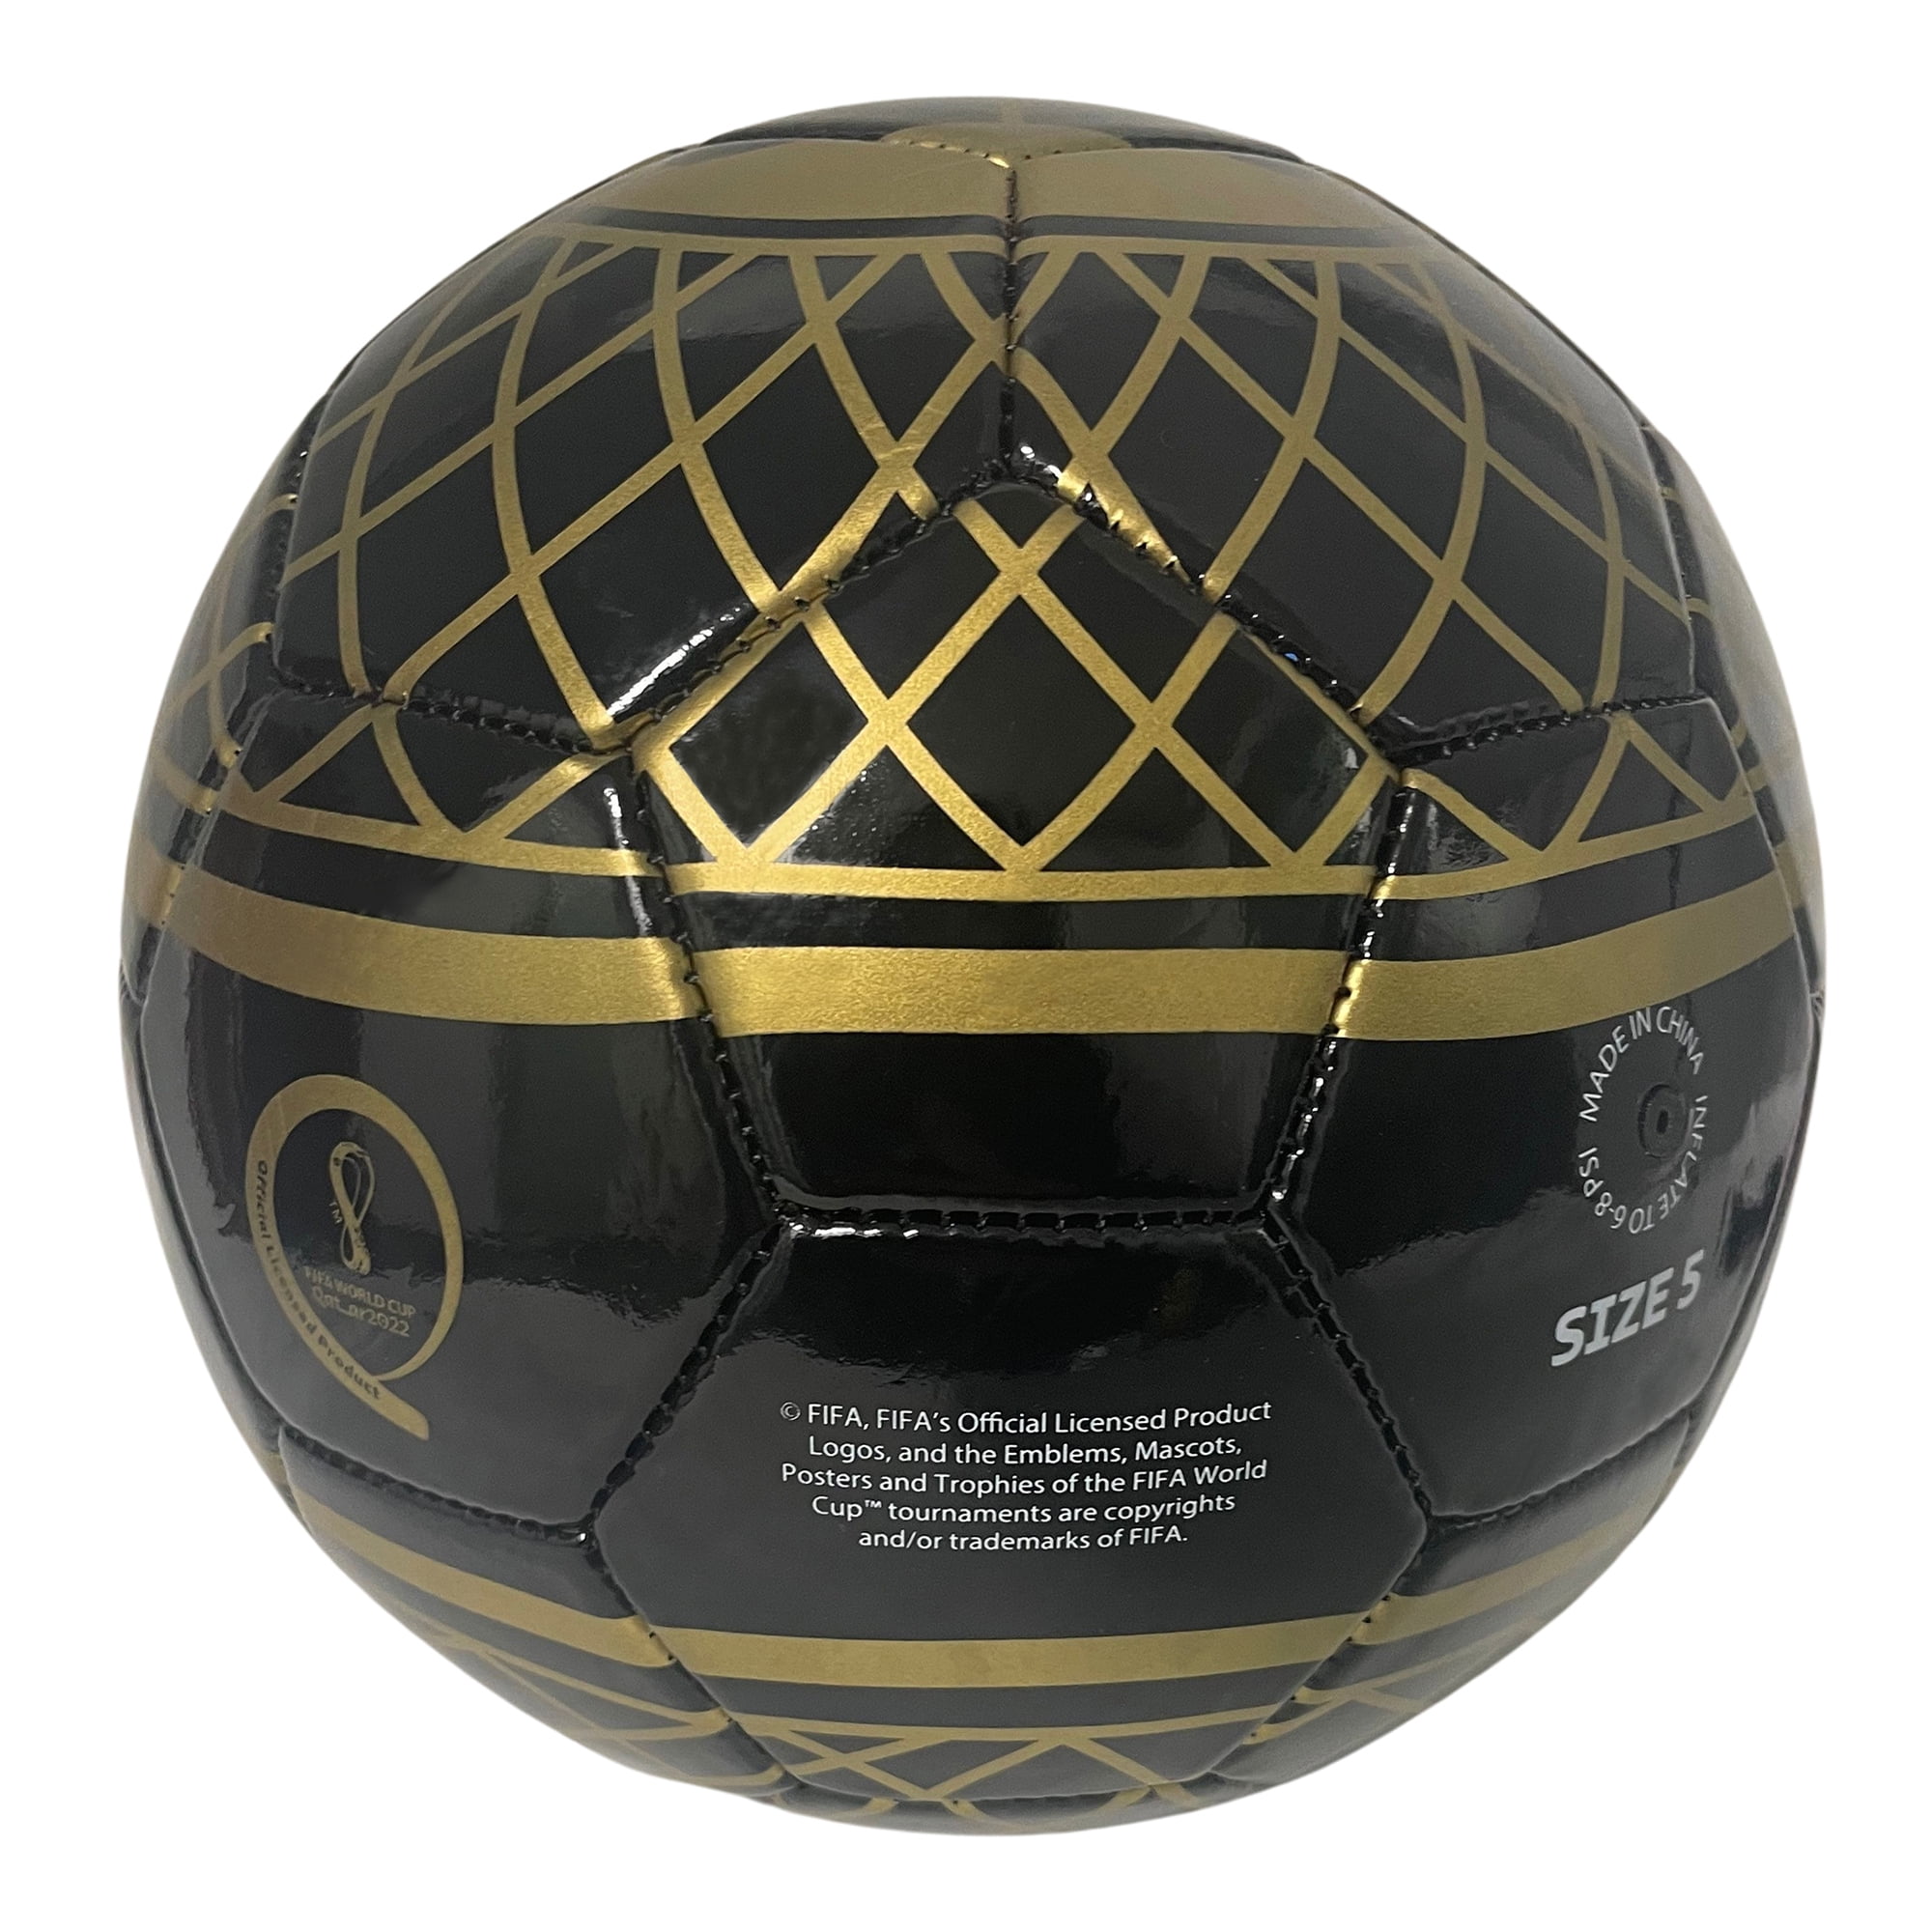 Economisch noodzaak Assortiment FIFA World Cup Soccer Ball Size 5, Platinum Print - Walmart.com